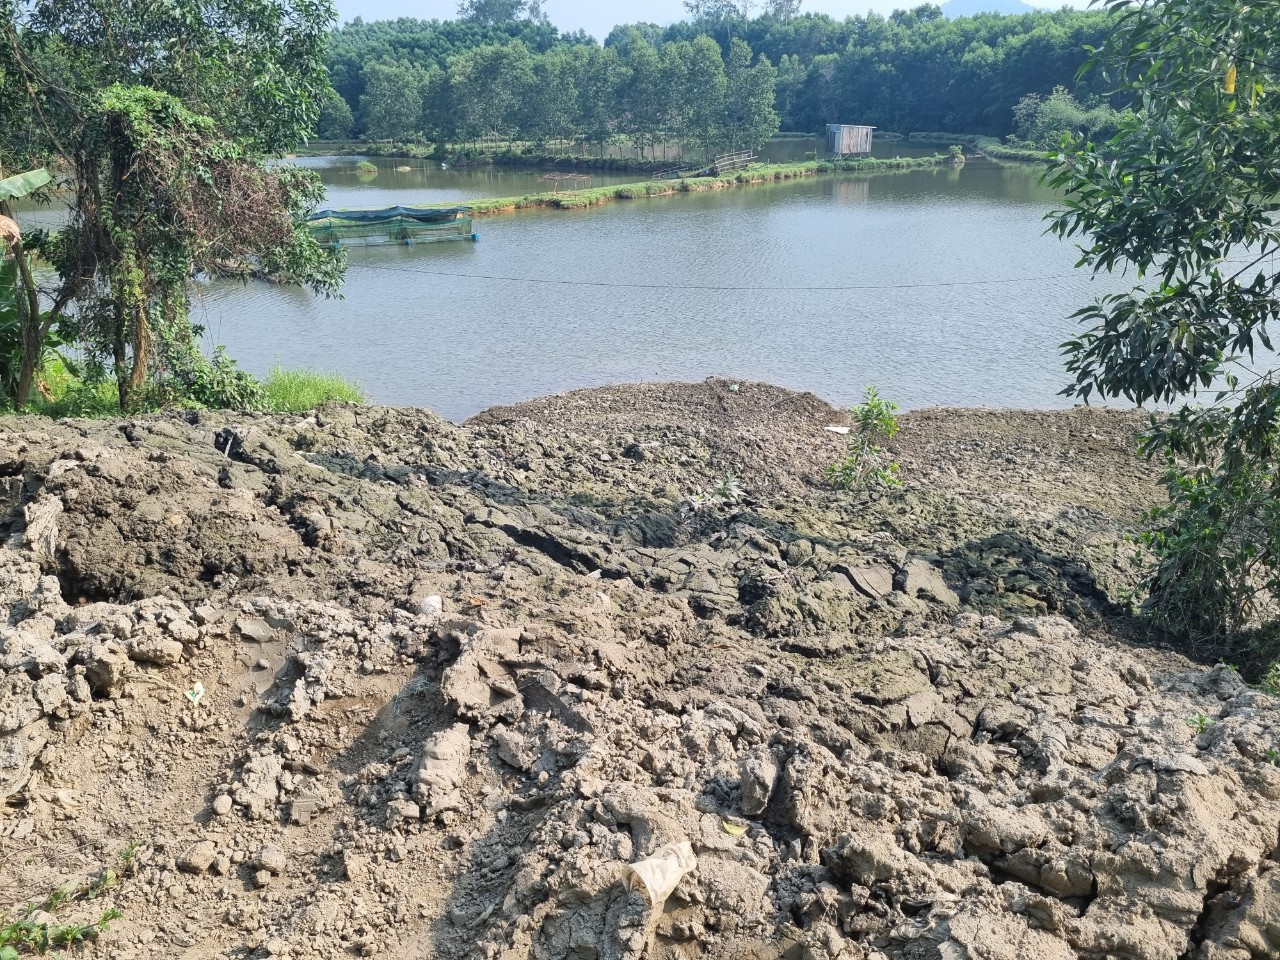 Cơ quan chức năng tỉnh Thừa Thiên Huế đã yêu cầu đơn vị thi công tạm ngưng đổ bùn thải từ dự án nạo vét xuống ao hồ Bàu Năng sau phản ánh của người dân.